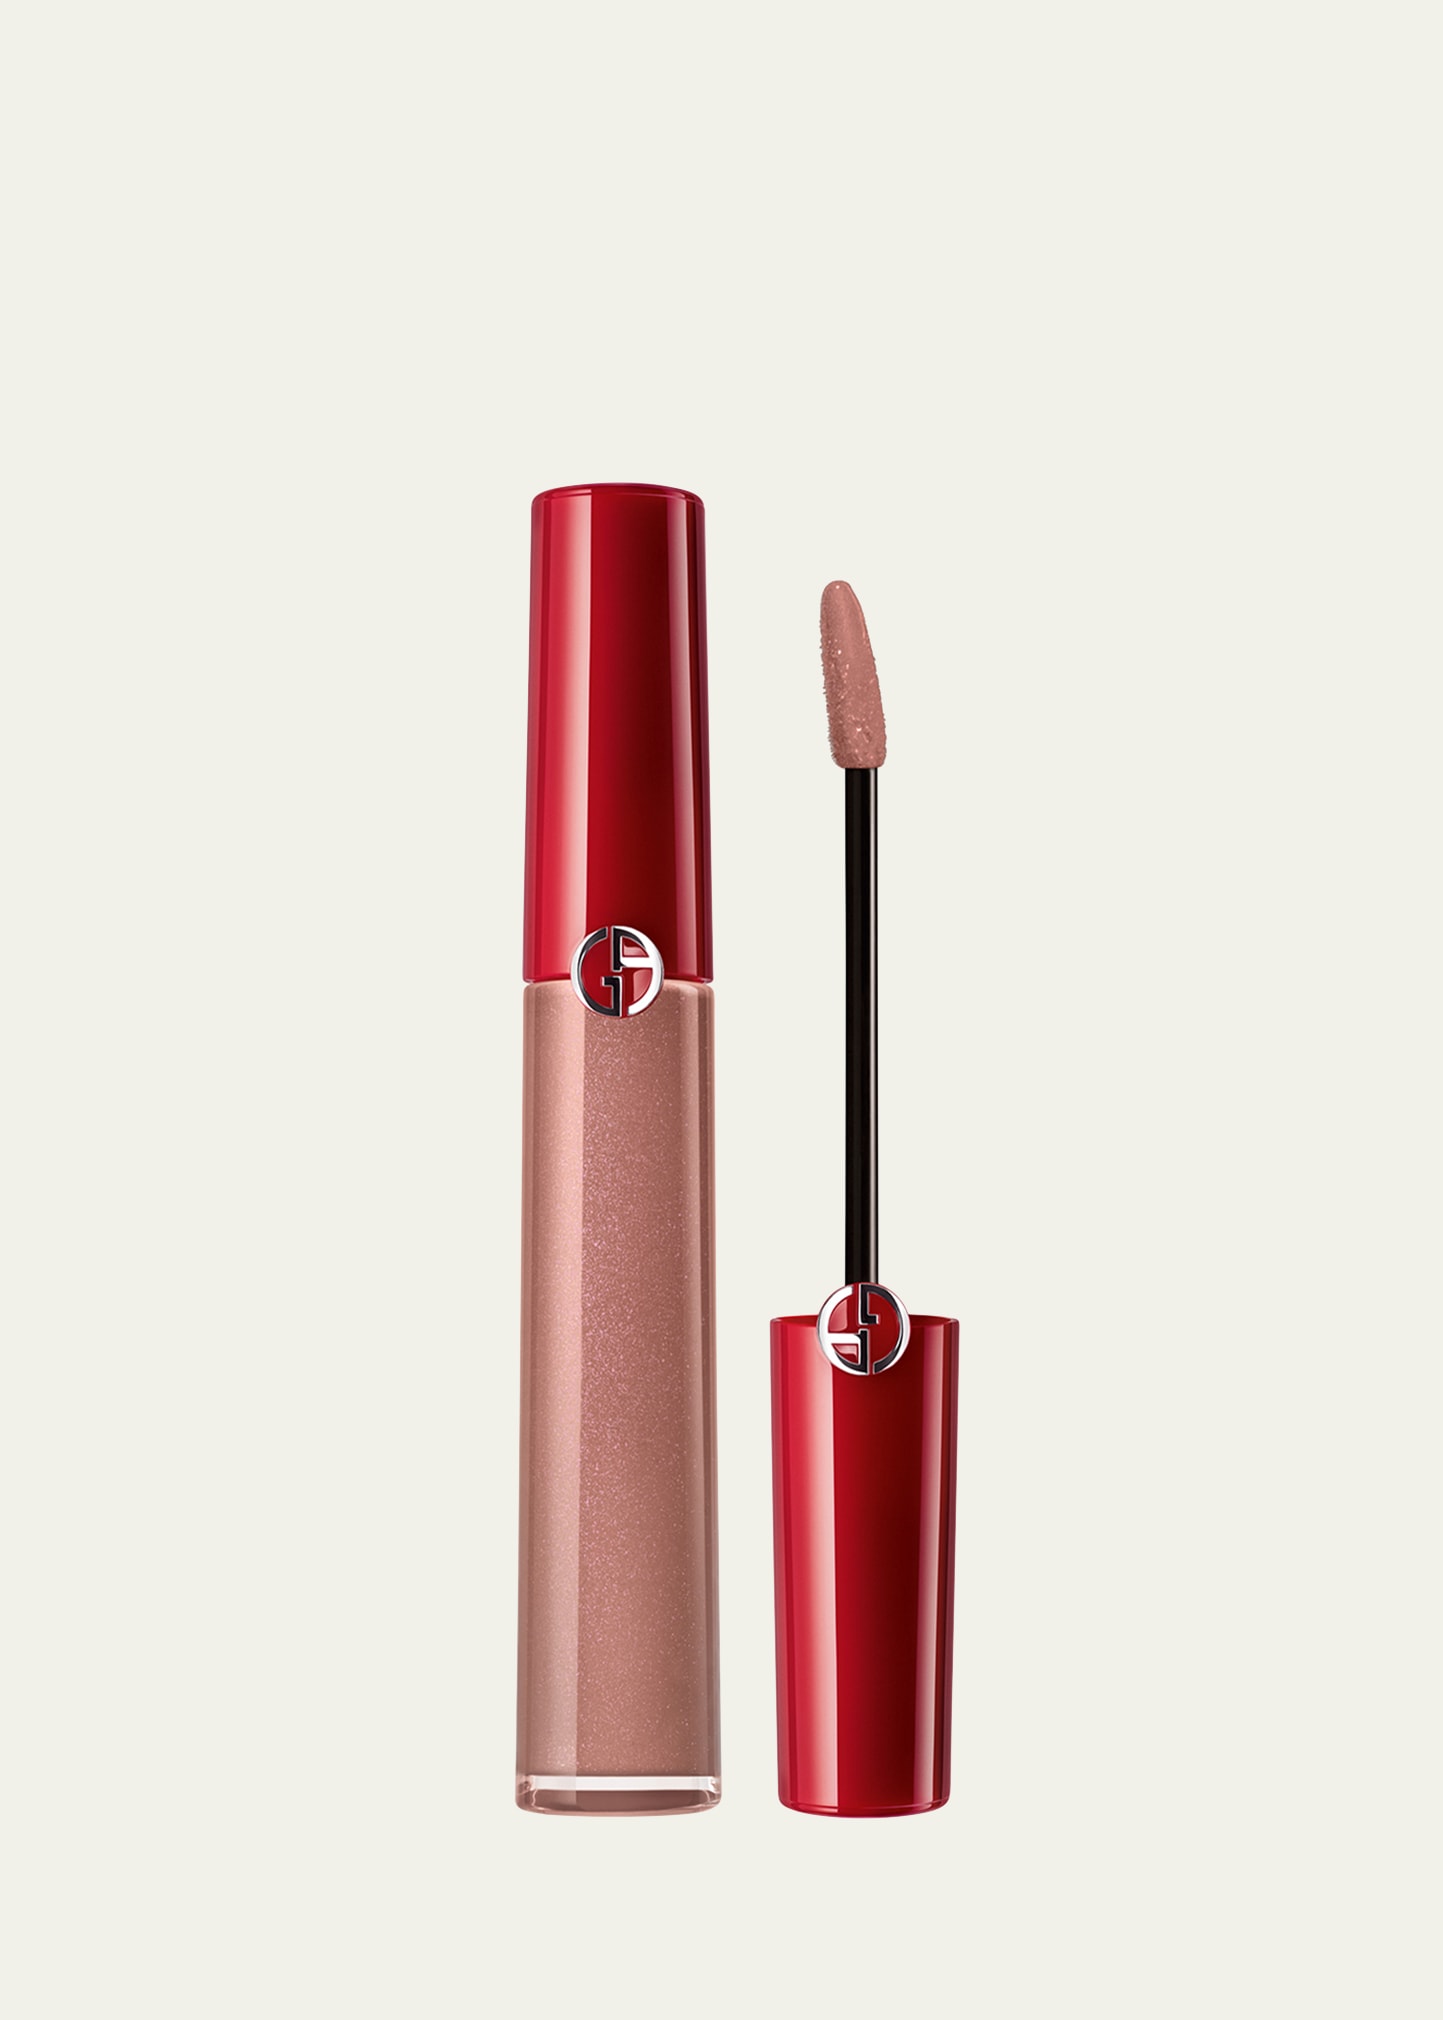 Armani Beauty Lip Maestro Liquid Lipstick In 110 Bronzed